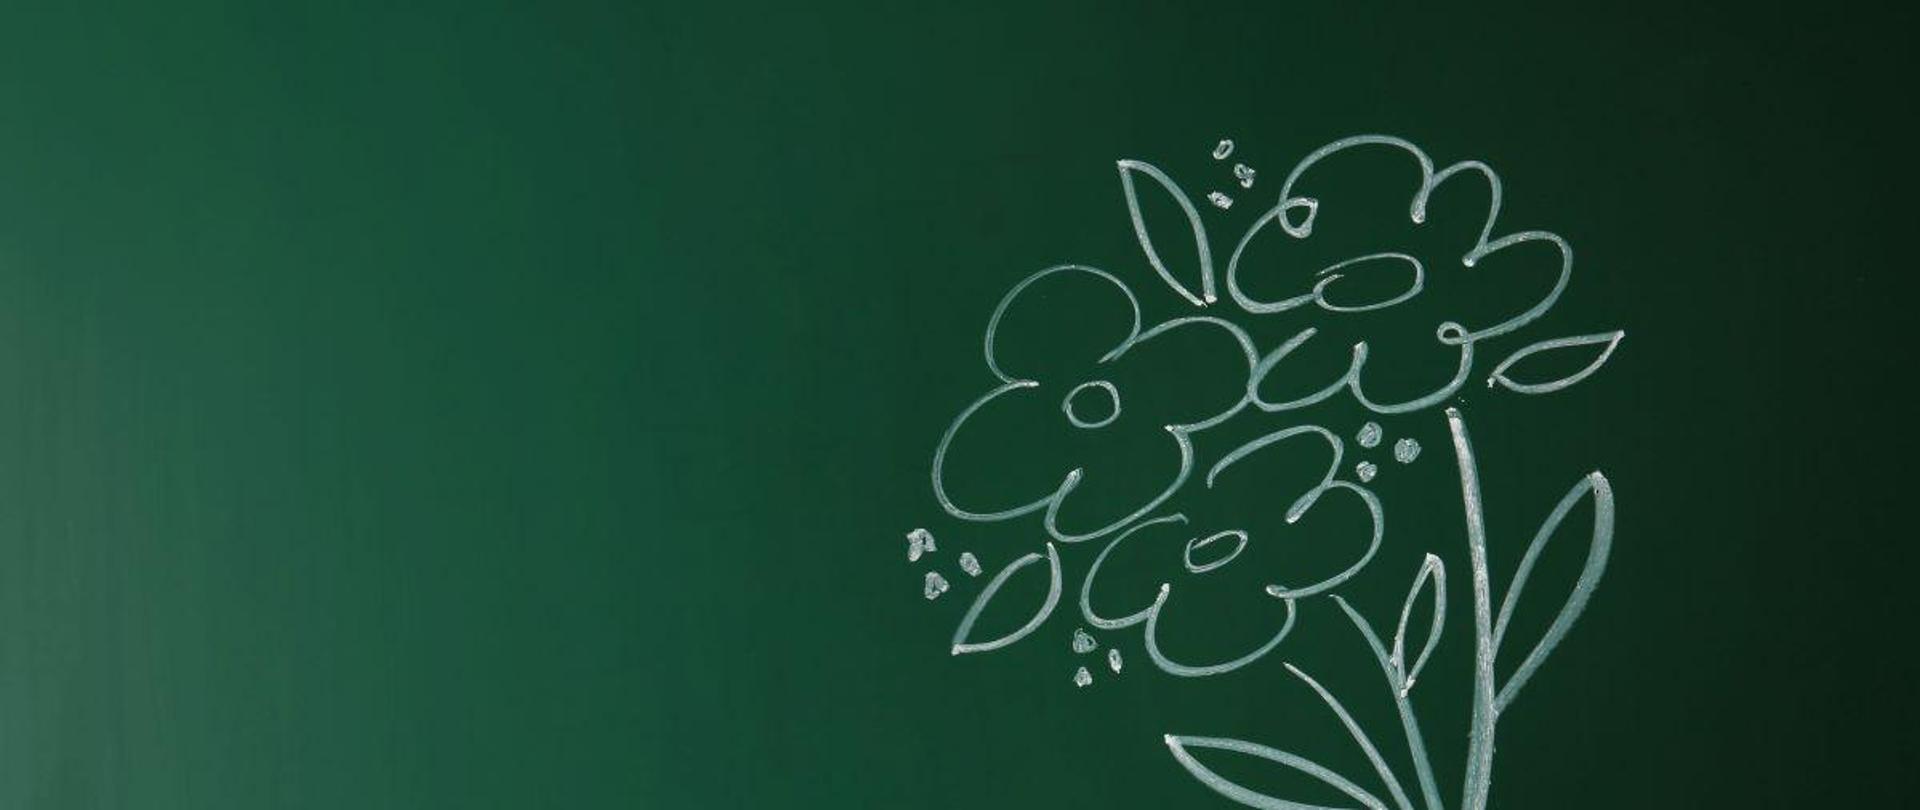 Na zielonej tablicy bukiet kwiatów narysowany białą kredą i zdjęcie ręki dziecka.